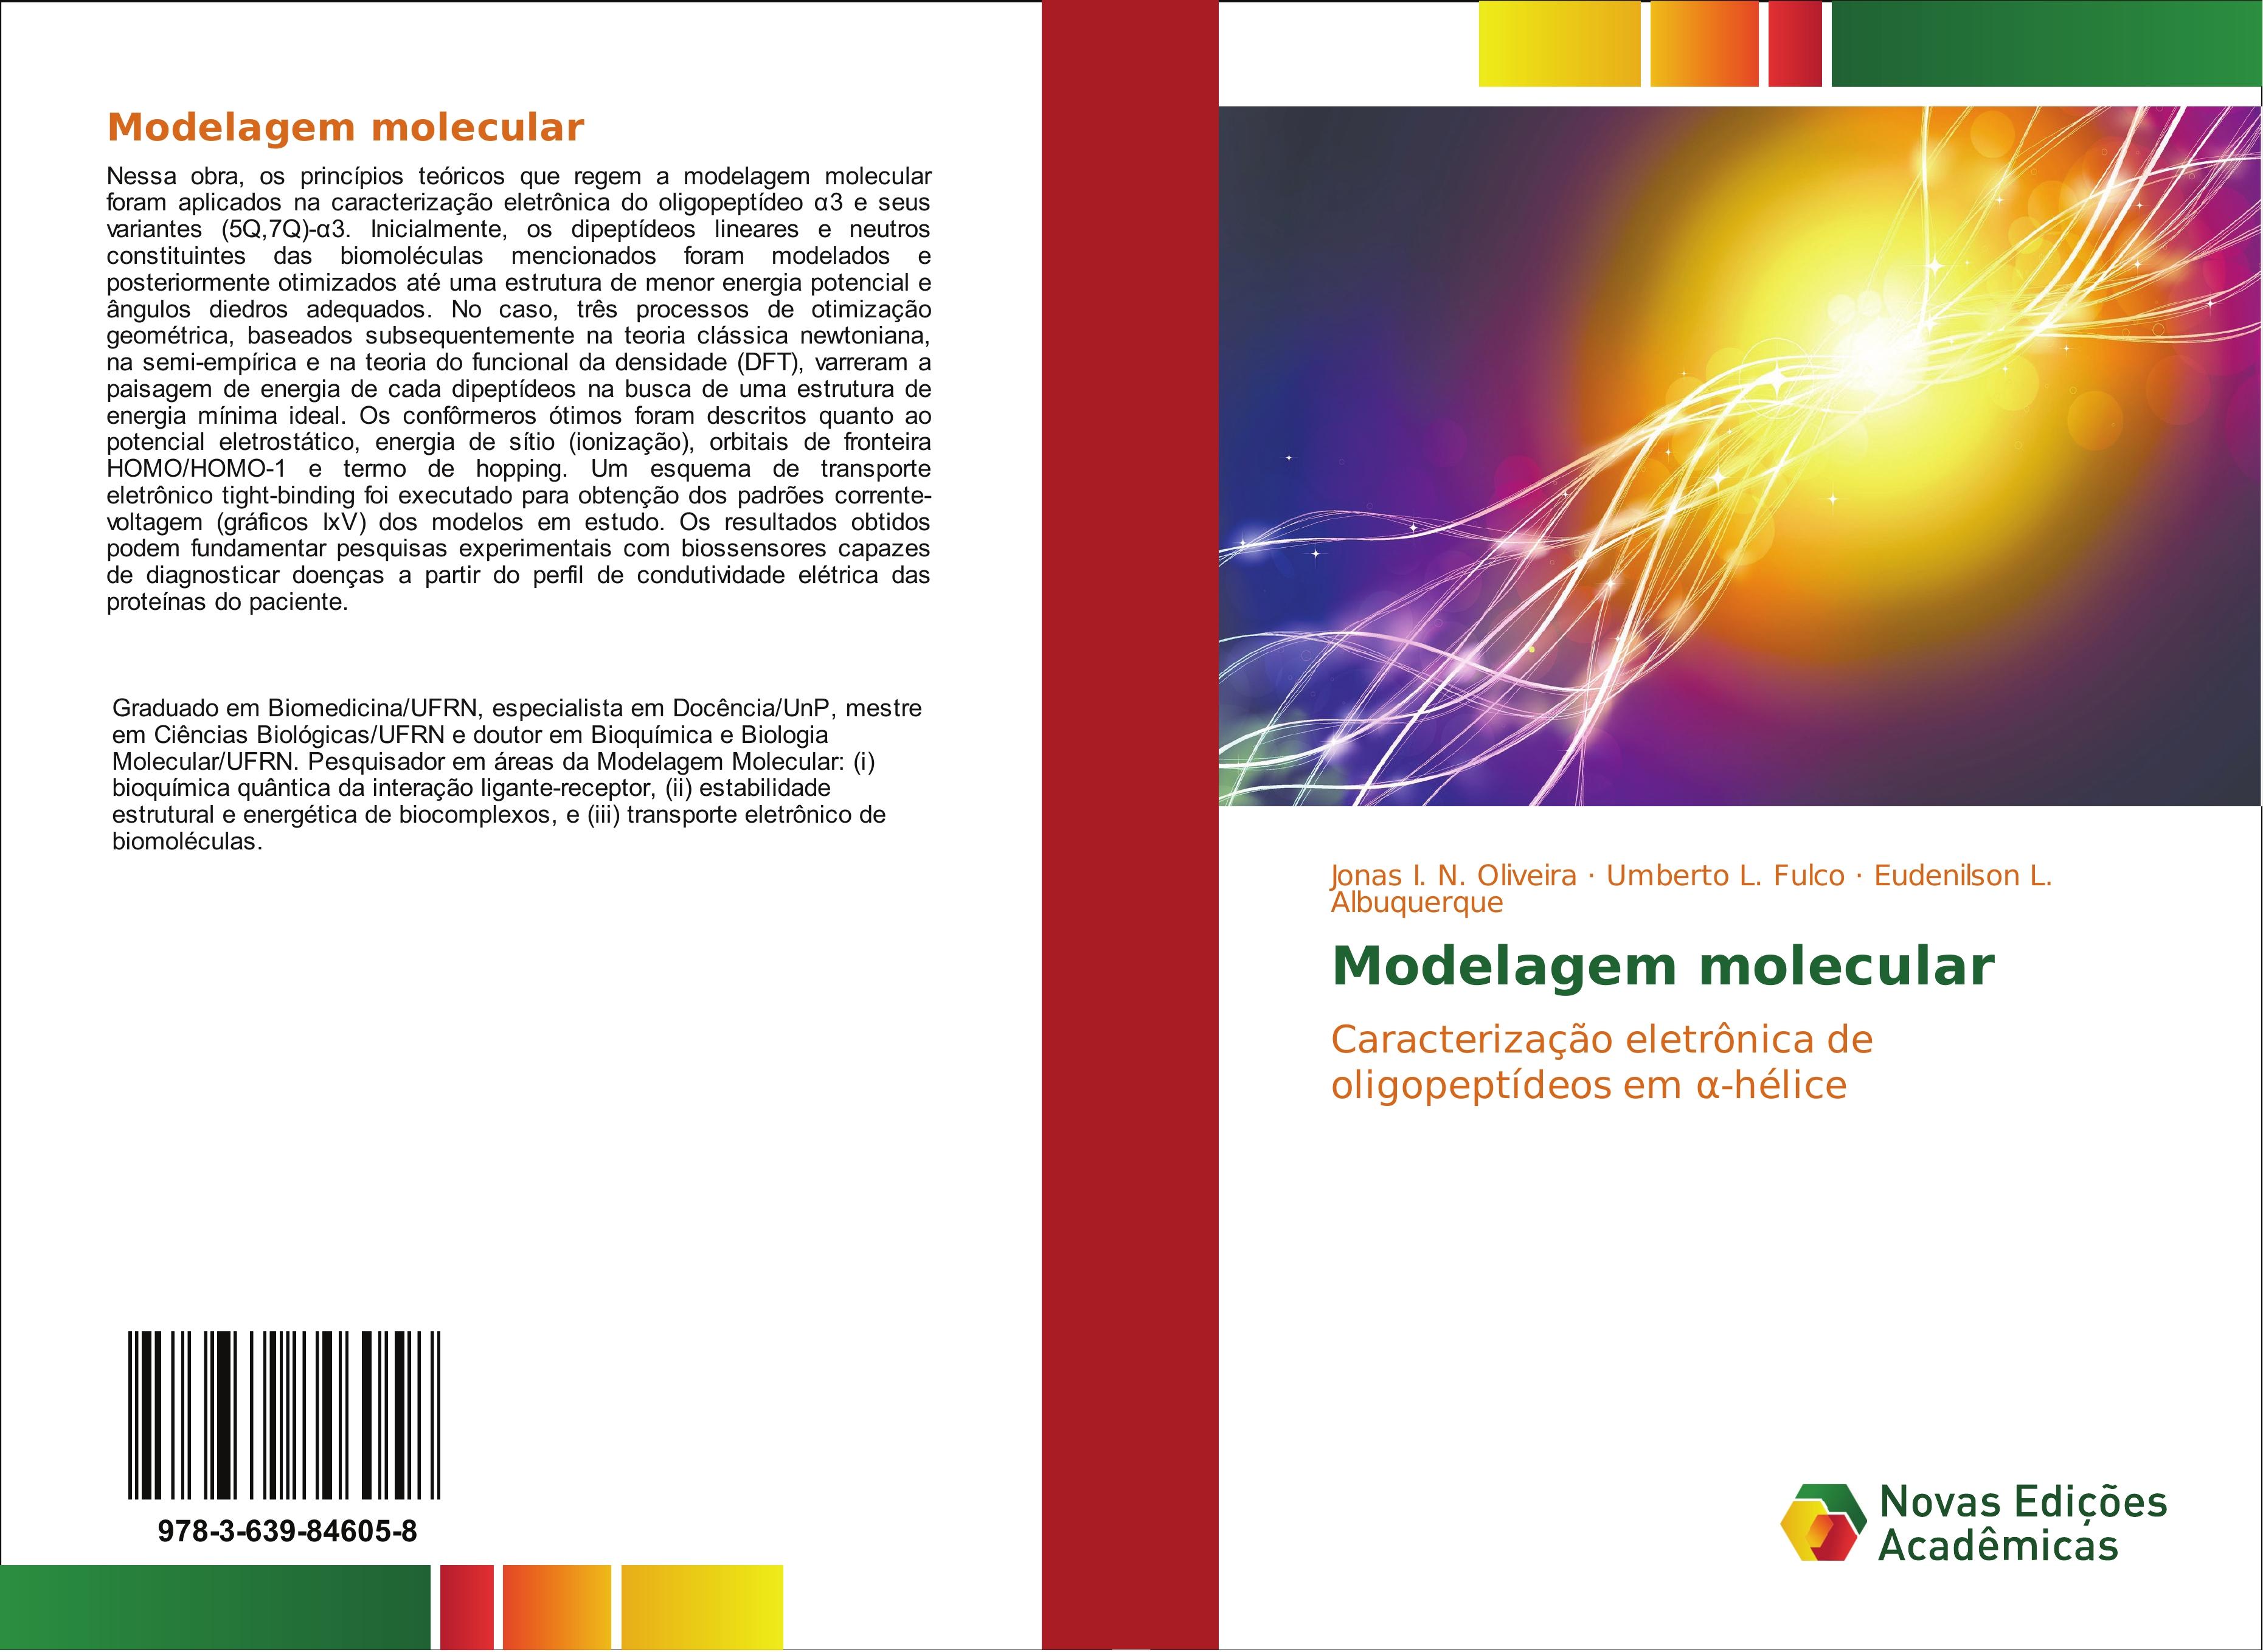 Modelagem molecular | Caracterização eletrônica de oligopeptídeos em ¿-hélice | Jonas I. N. Oliveira (u. a.) | Taschenbuch | Paperback | Portugiesisch | 2015 | Novas Edições Acadêmicas - Oliveira, Jonas I. N.